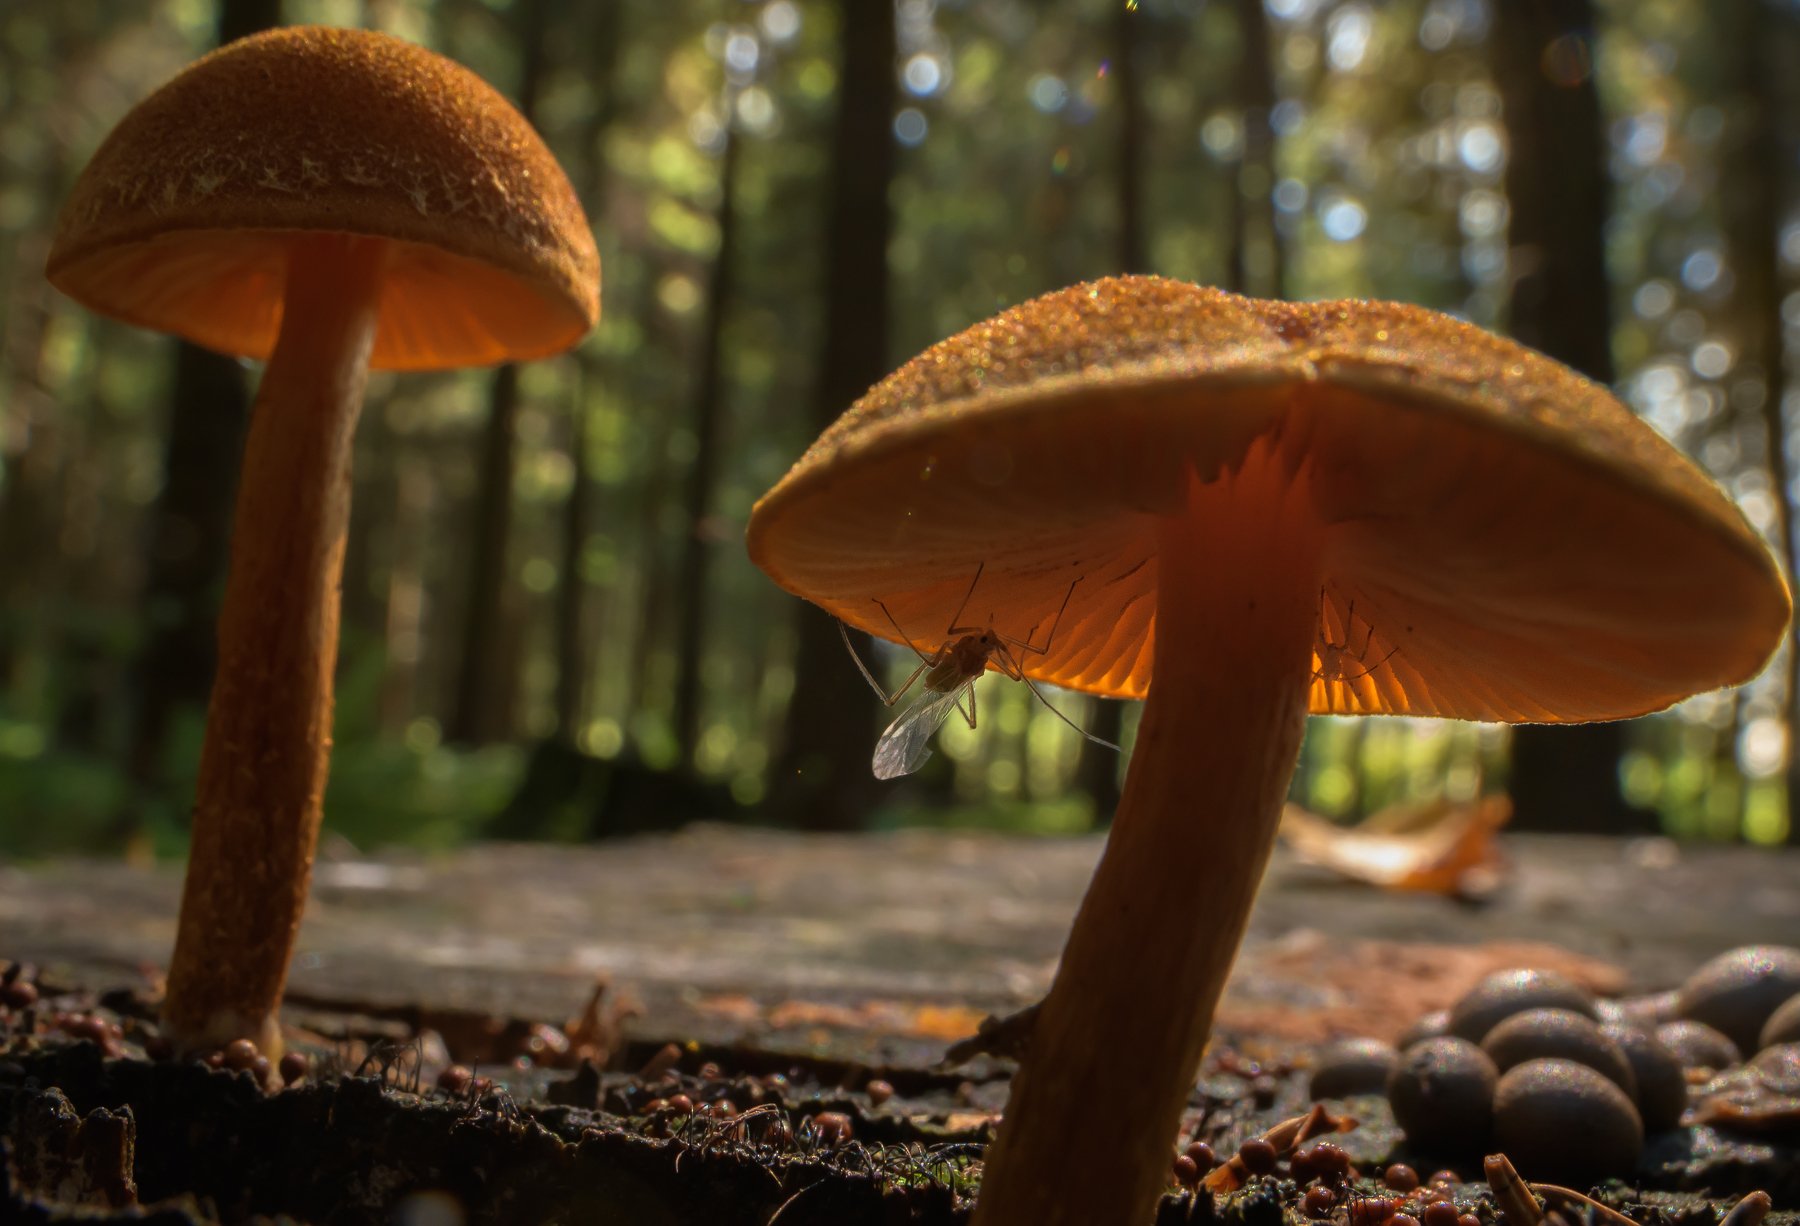 грибочки, еловый лес, пень в лесу, насекомое под шляпкой, Ксения Соварцева